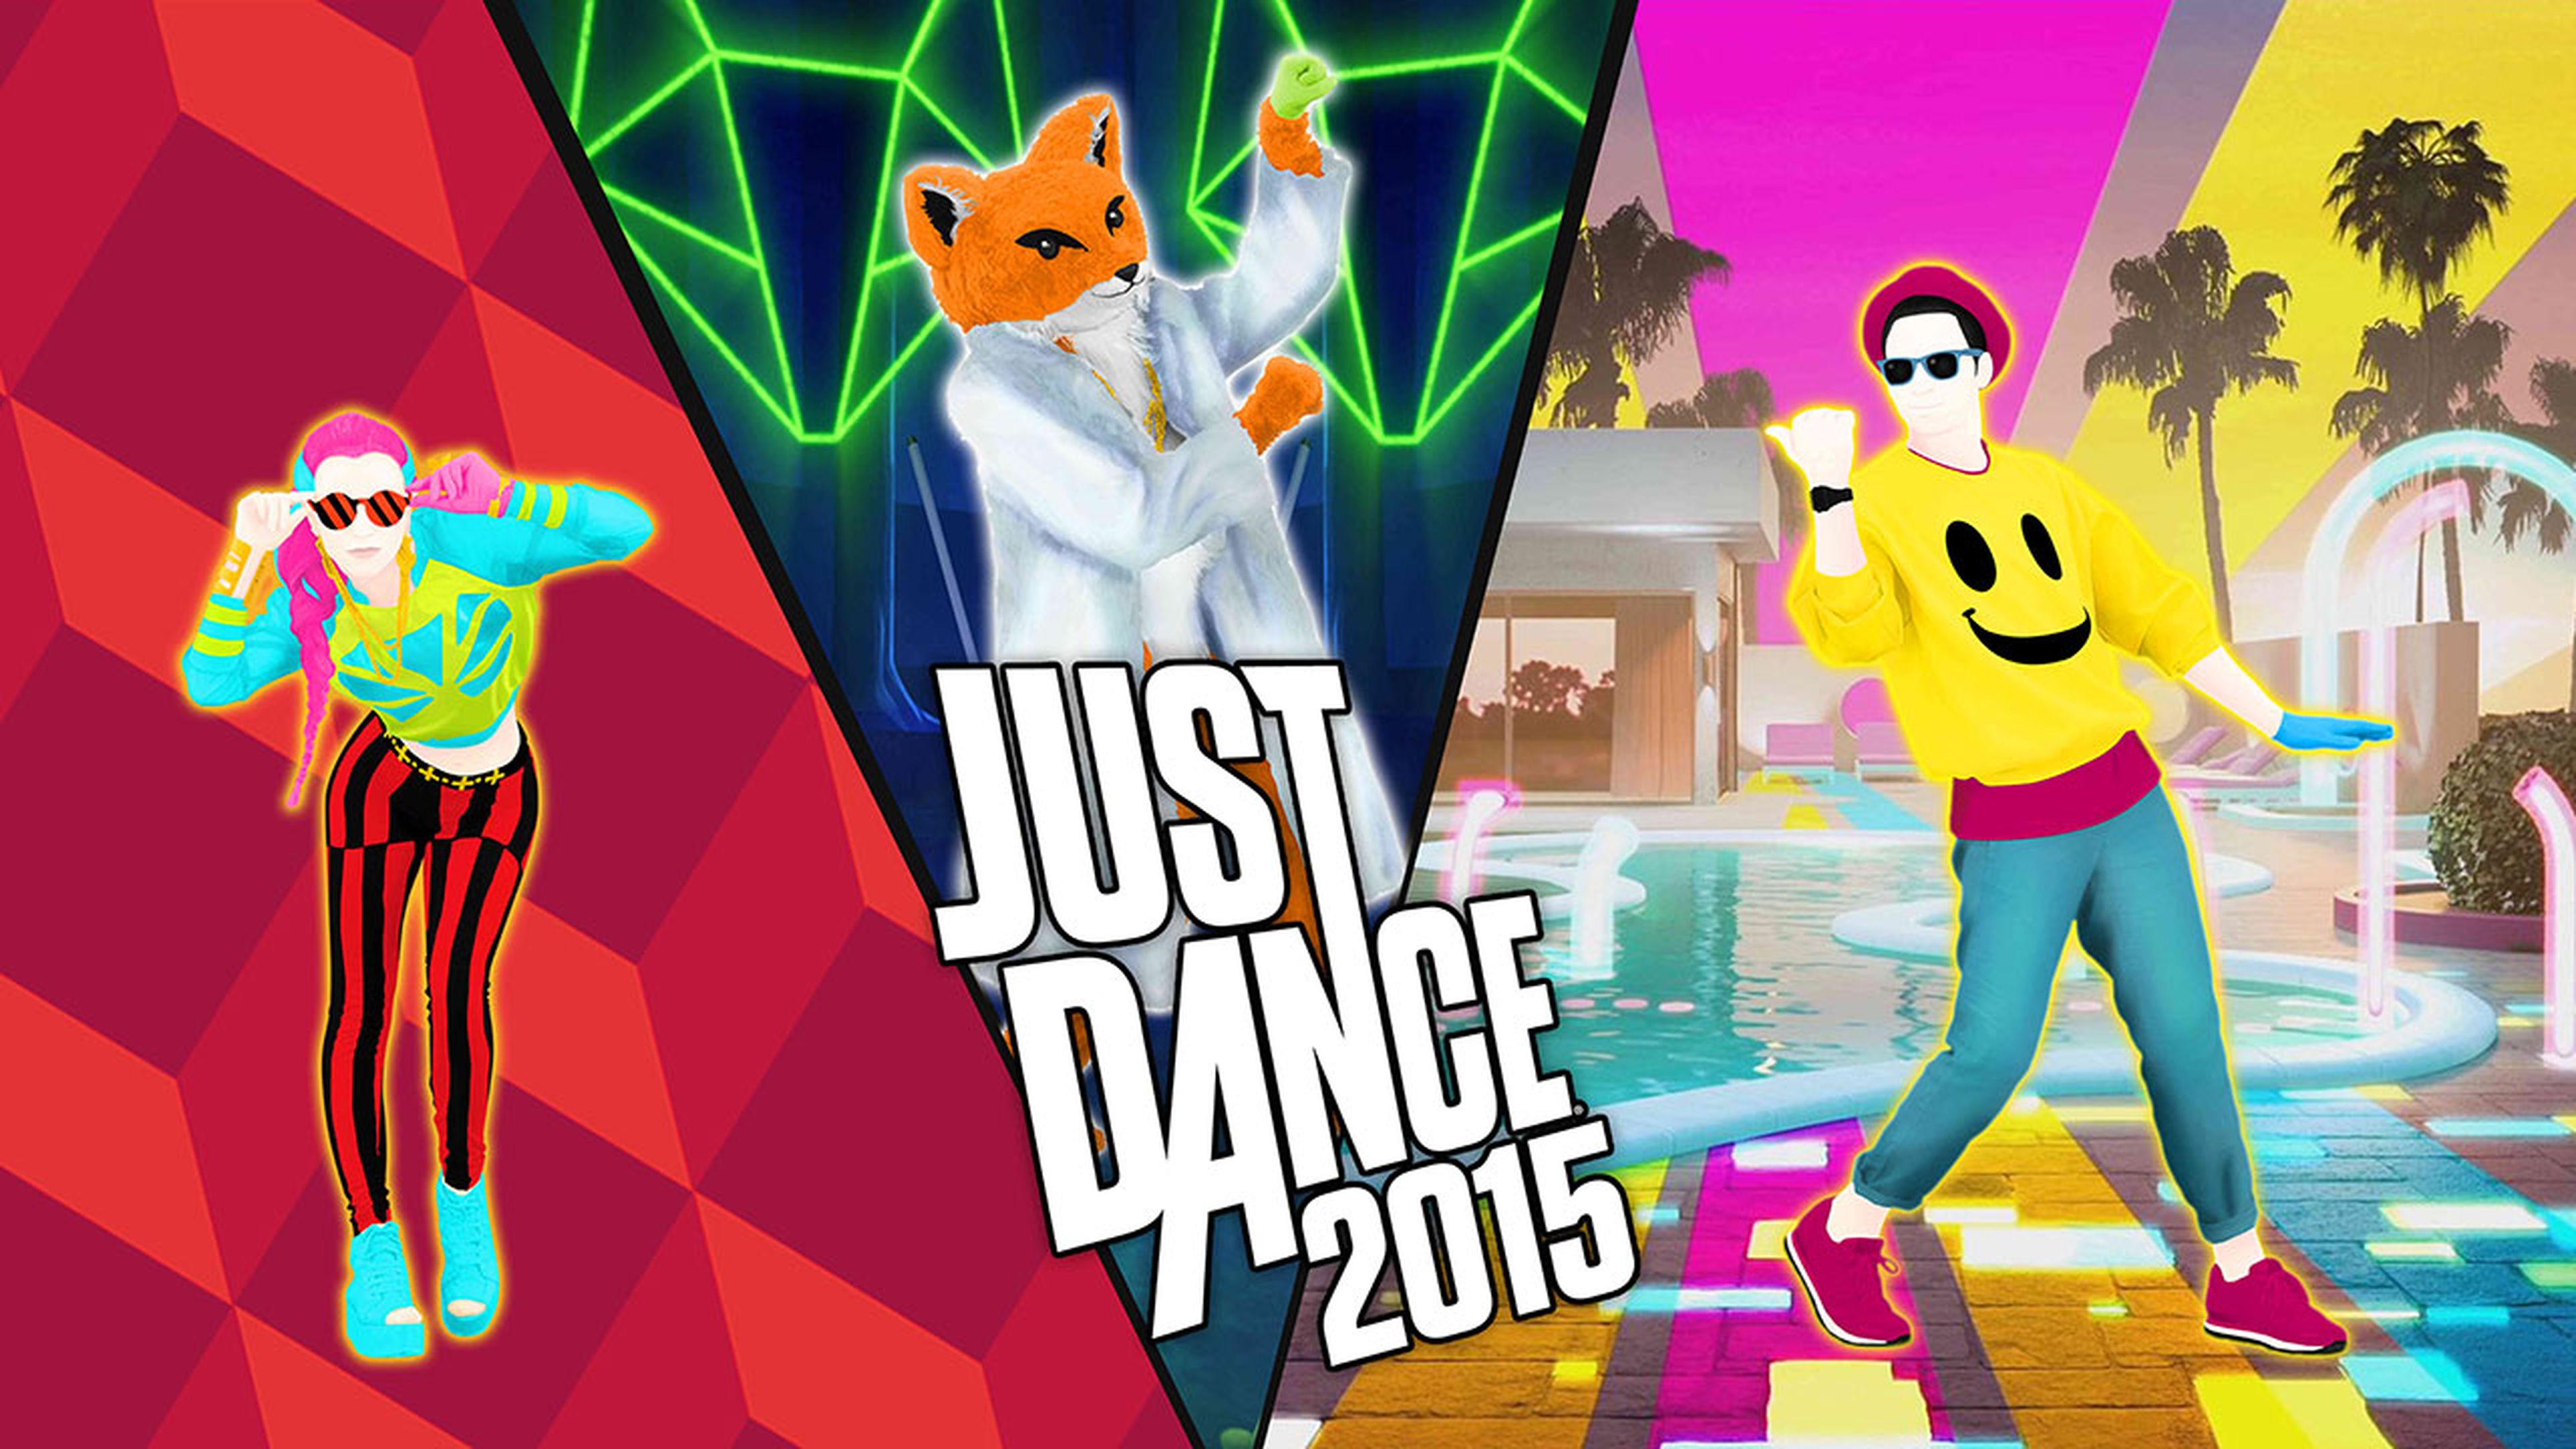 Just Dance 2015 es lo más vendido en diciembre